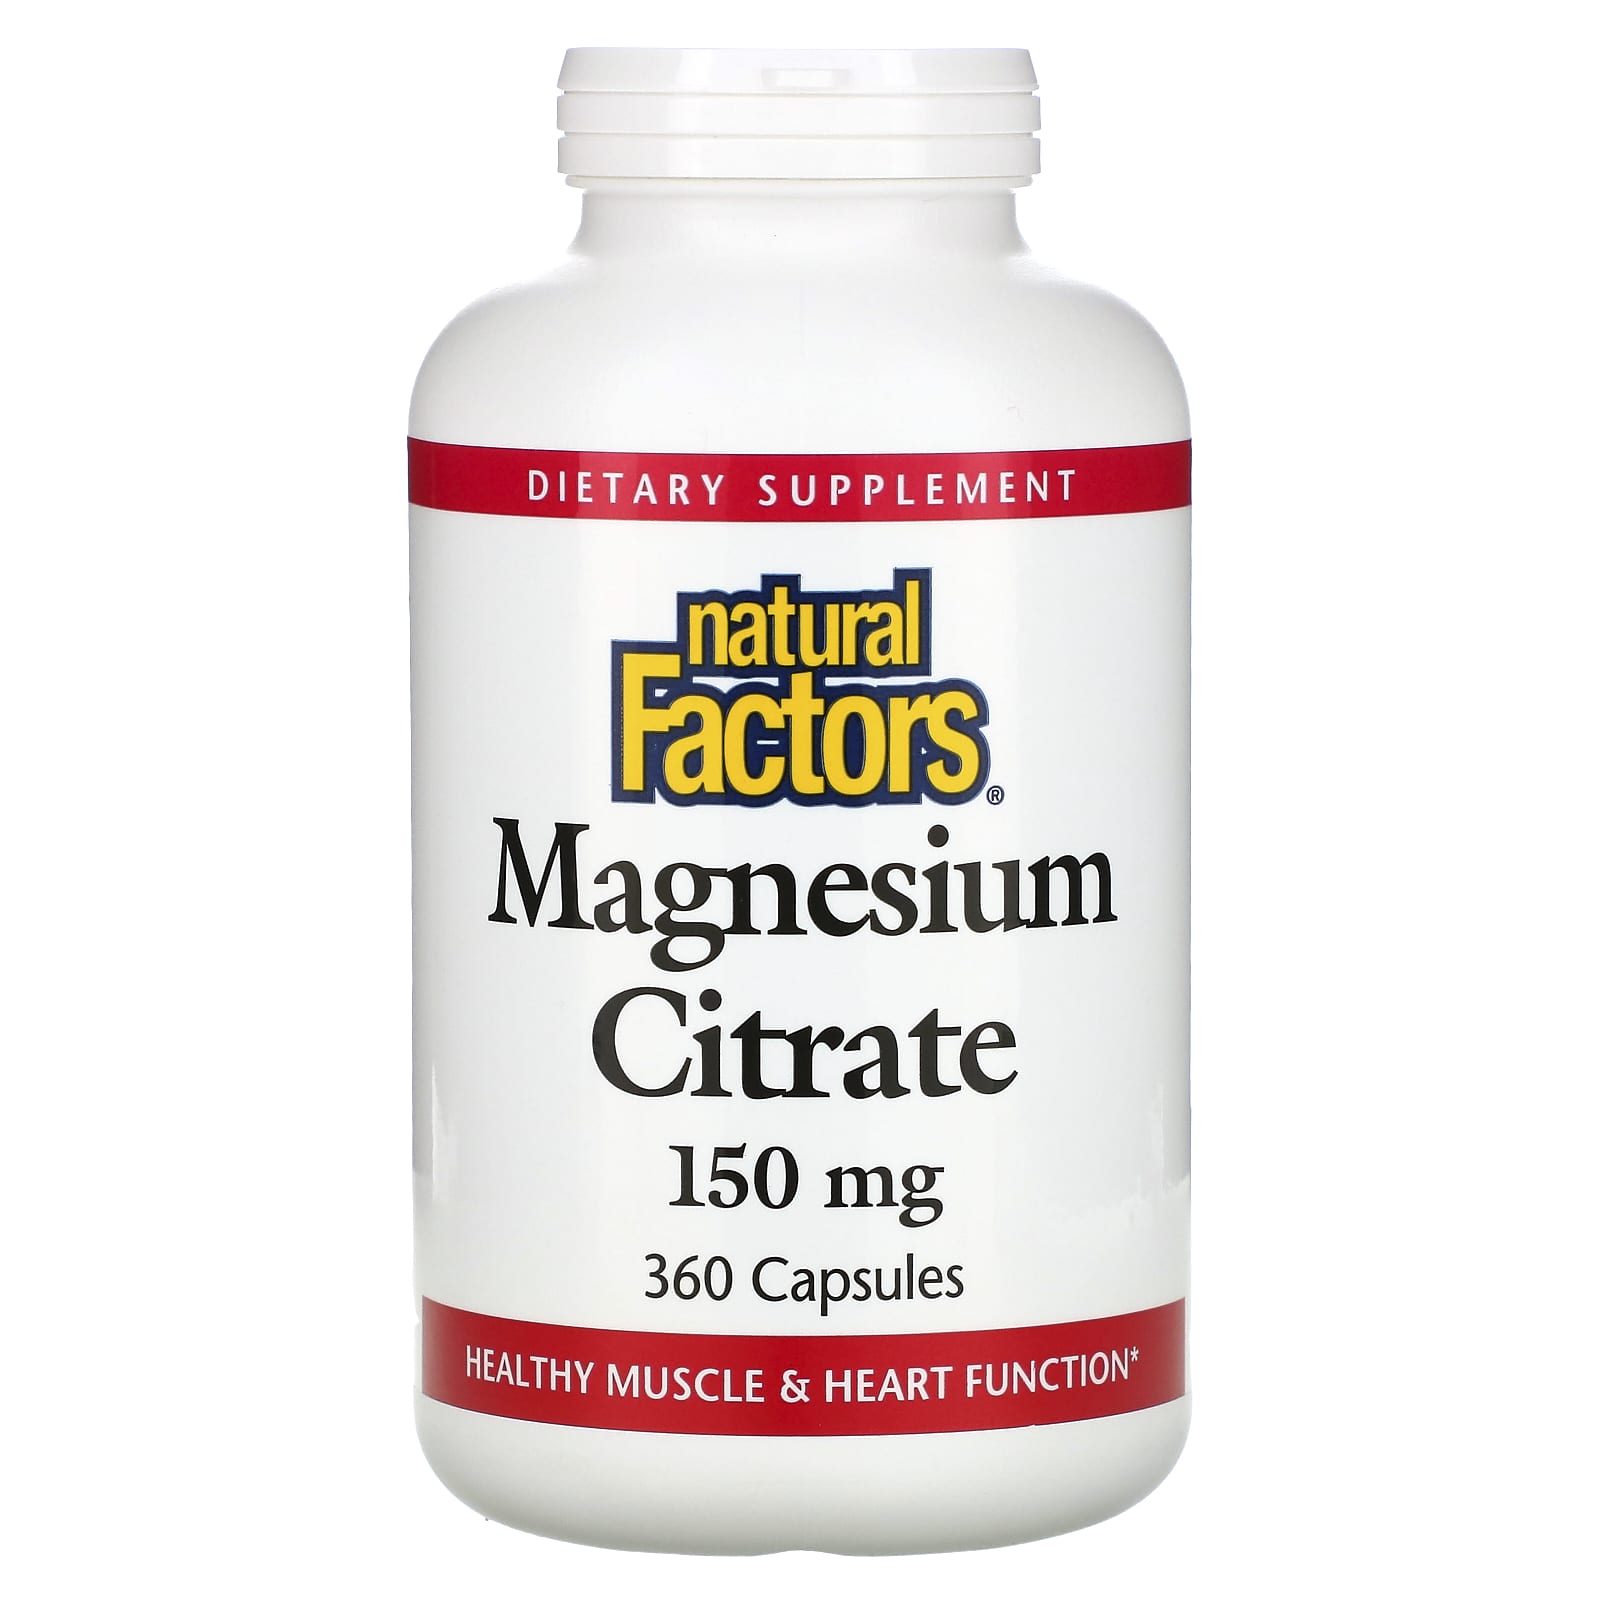 Цитрат магния купить в москве. Natural Factors Magnesium Citrate 150 мг 90 капсул. Natural Factors цитрат магния, 150 мг, 360 капсул. Магнезиум цитрат. Natural Factors, цитрат магния, 150 мг.